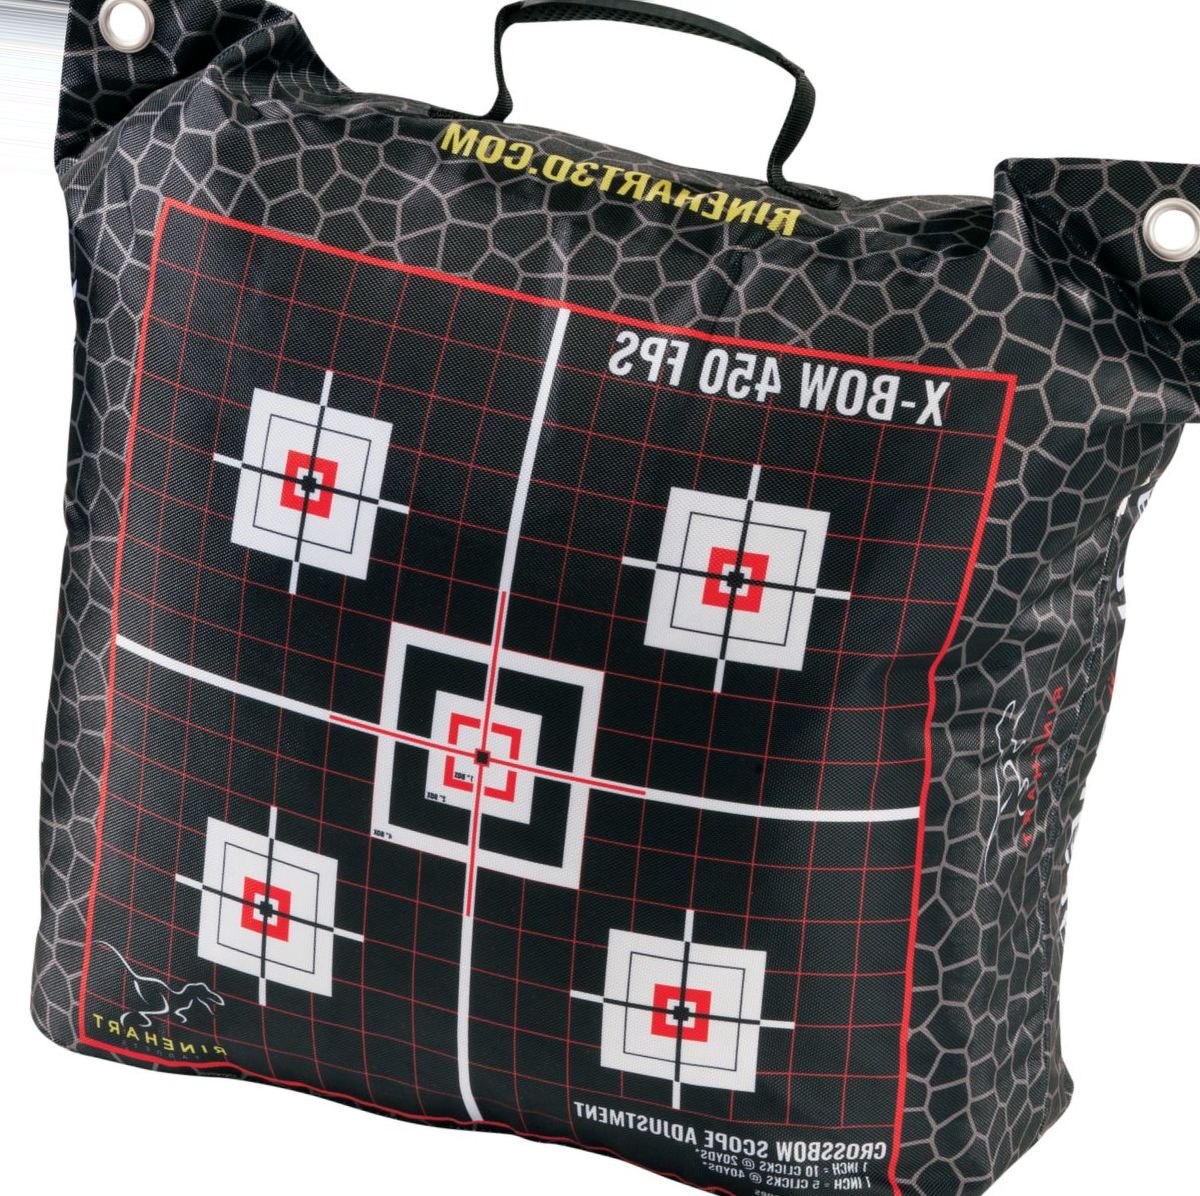 Rinehart Crossbow Bag Target